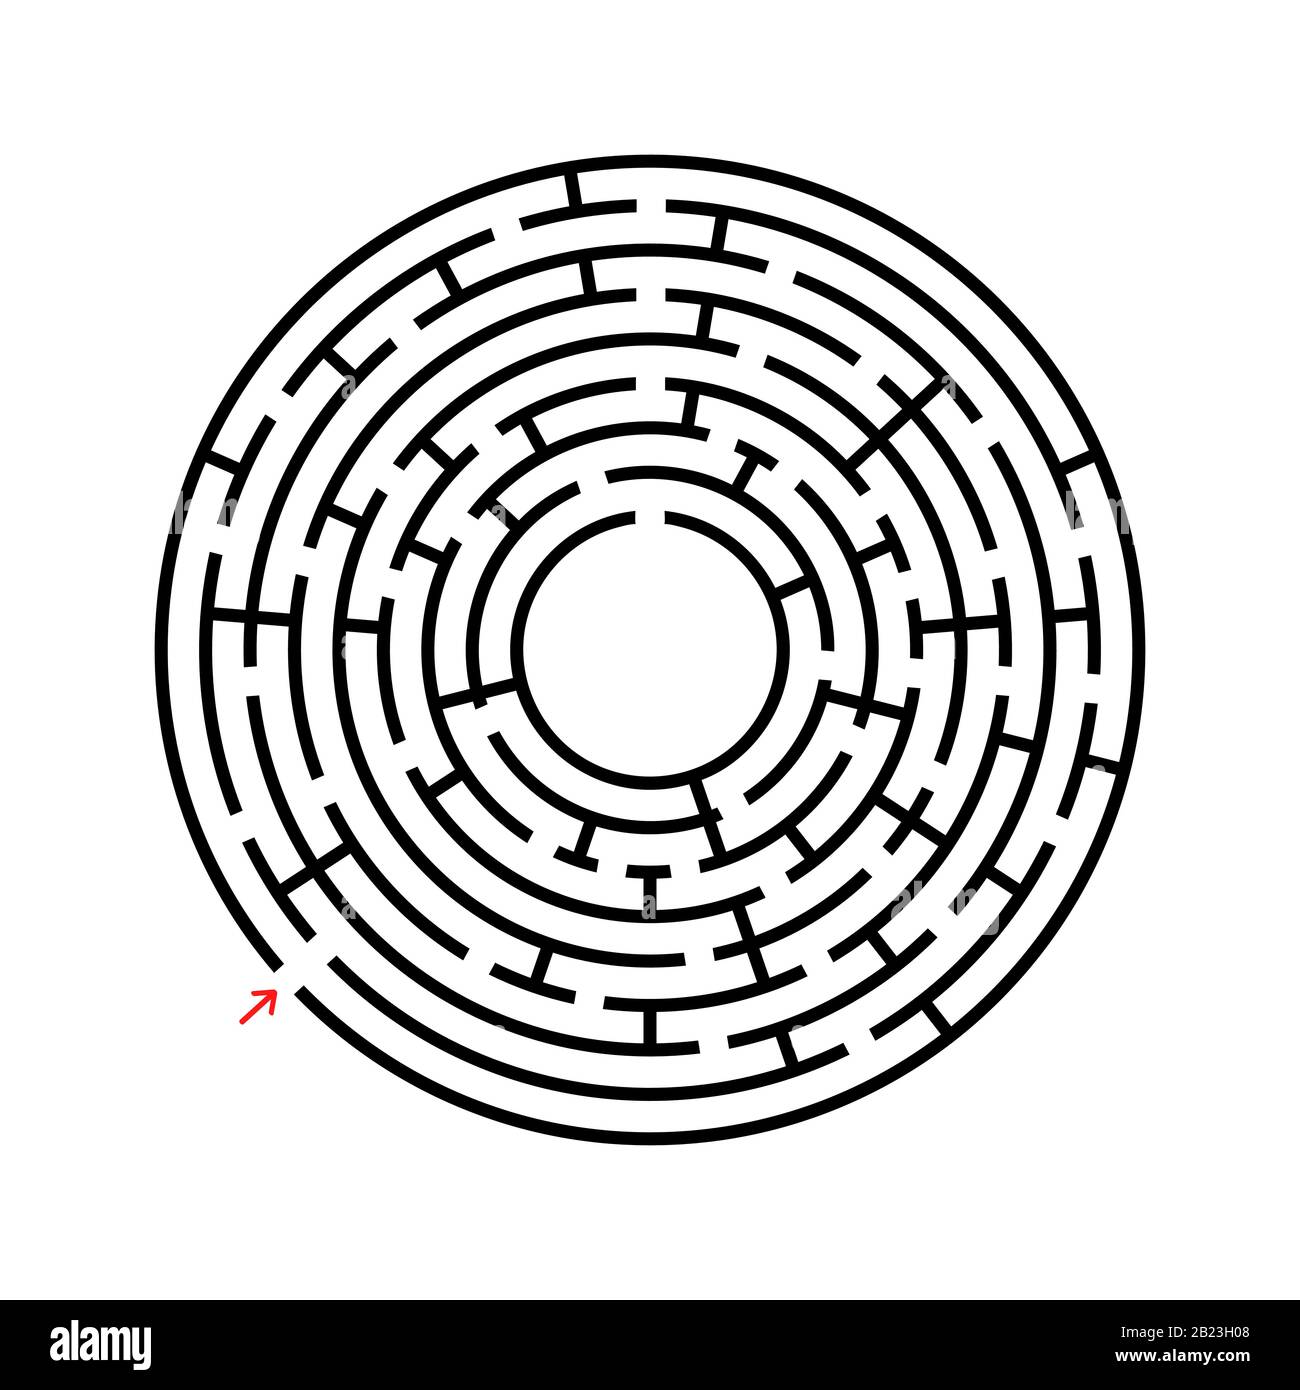 Labirinto rotondo astratto. Un gioco educativo per bambini e adulti. Semplice immagine vettoriale piatta isolata su sfondo bianco Illustrazione Vettoriale